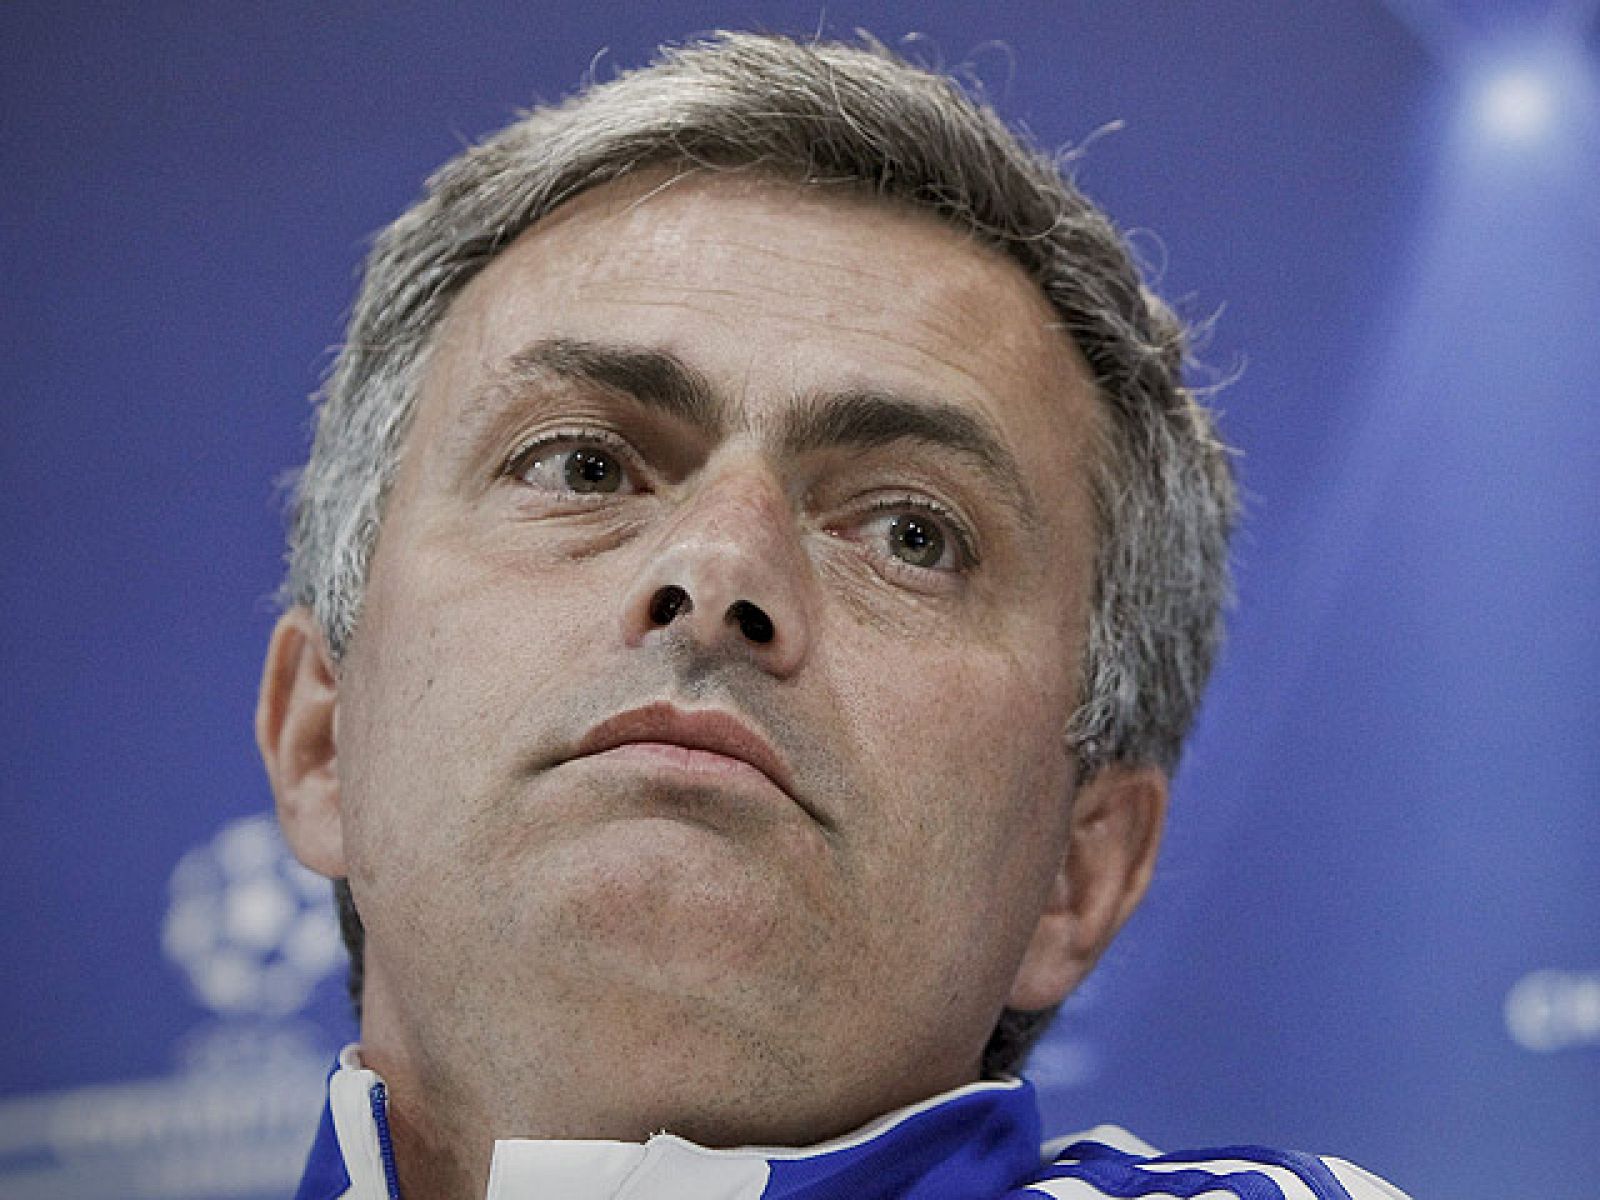 El entrenador del Real Madrid, Jose Mourinho, ha asegurado que el Real Madrid no debe "obsesionarse" con la décima Copa de Europa.